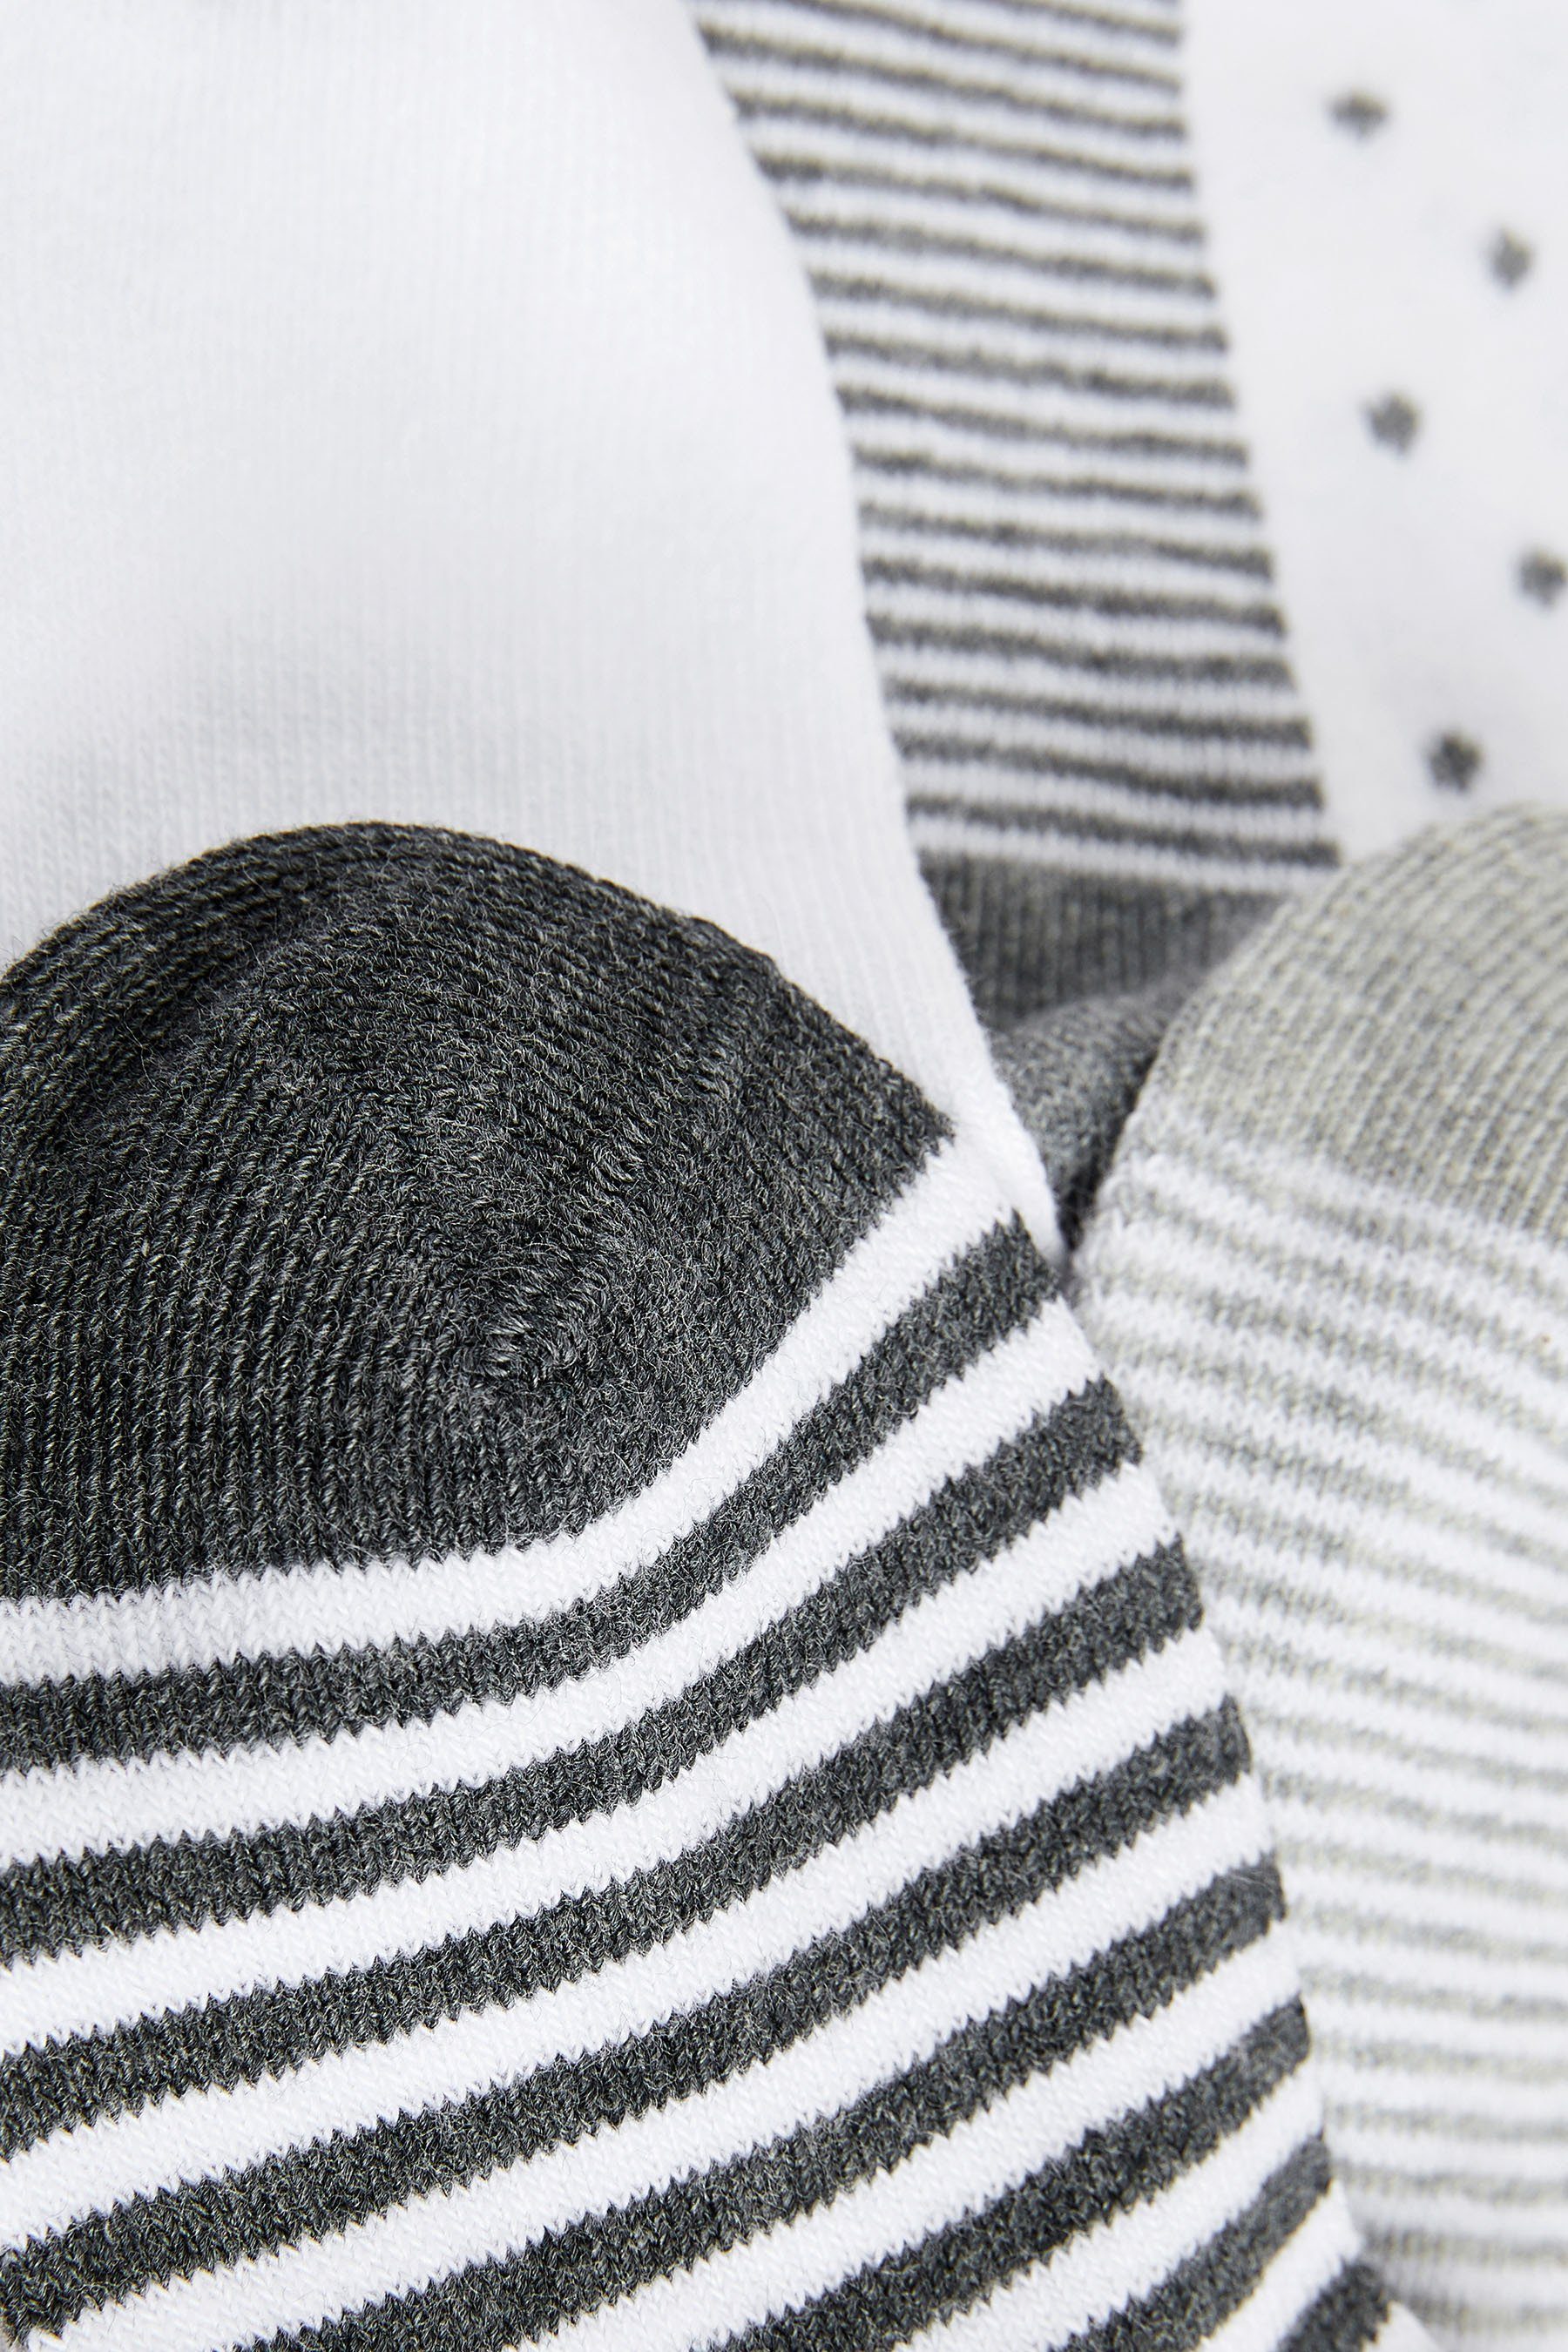 Wäsche/Bademode Socken Next Socken Gepunktete und gestreifte Sneakersocken, 5er-Pack (5-Paar)